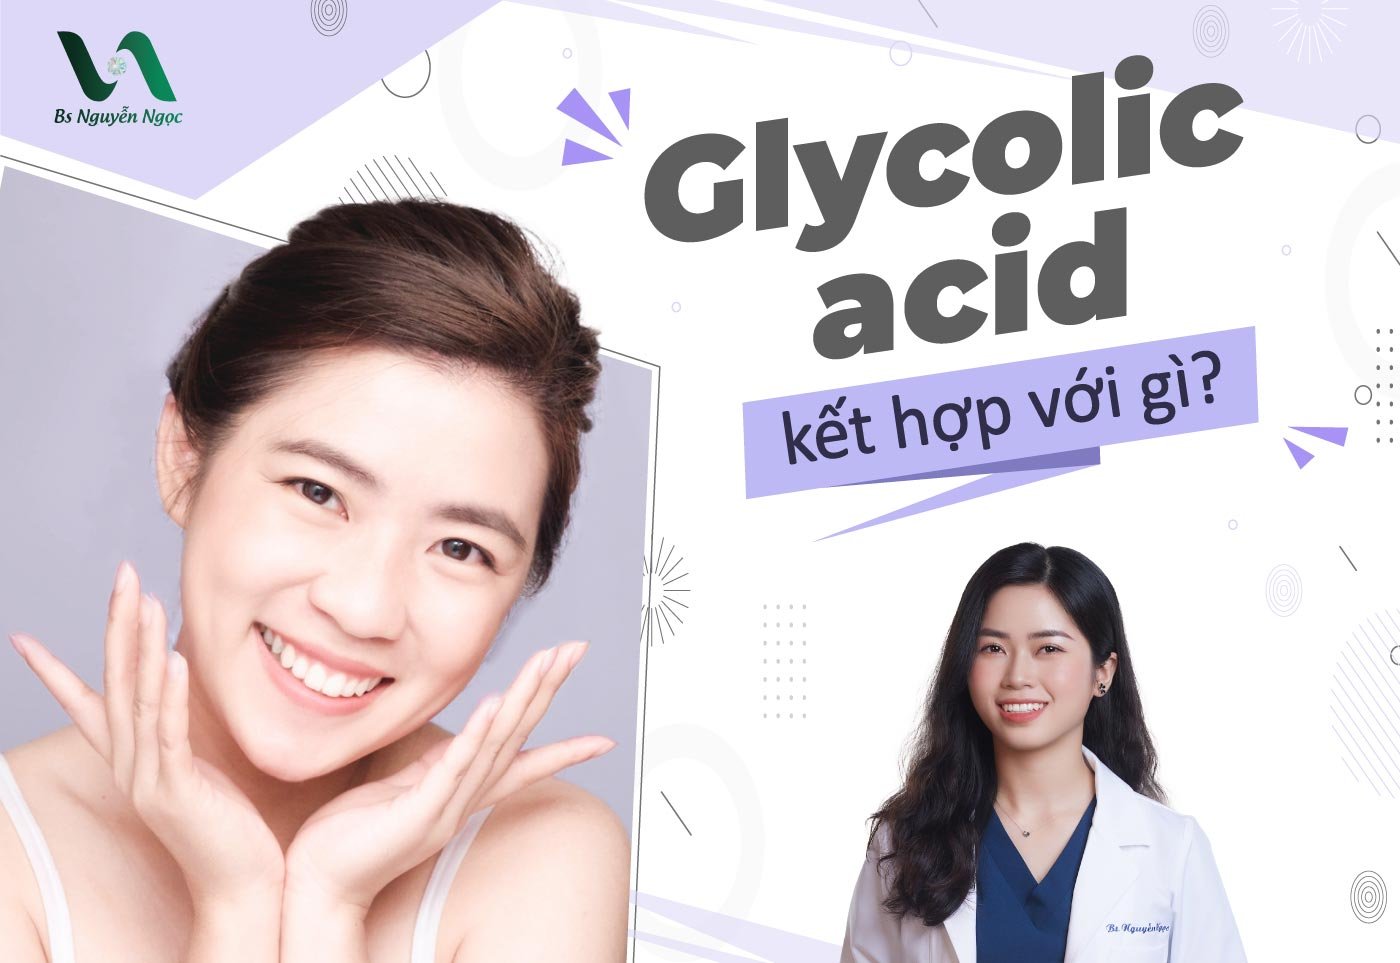 Glycolic acid kết hợp với gì?